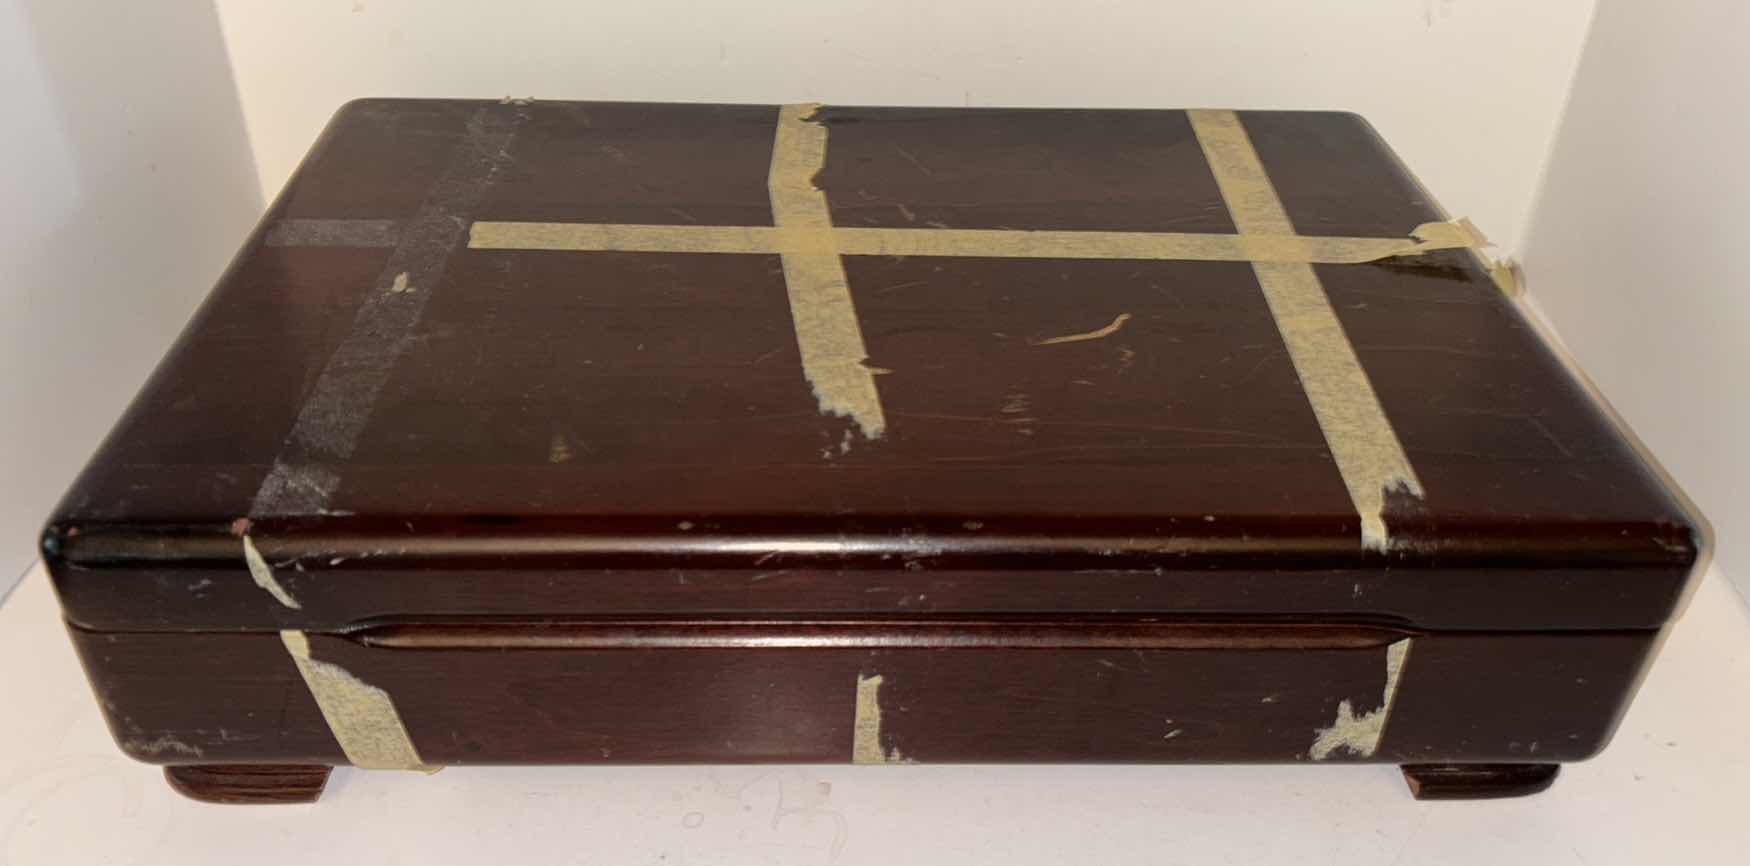 Photo 7 of 1881 ROGERS SILVERPLATE BY ONEIDA LTD SILVERSMITHS FLATWARE IN WOODEN BOX